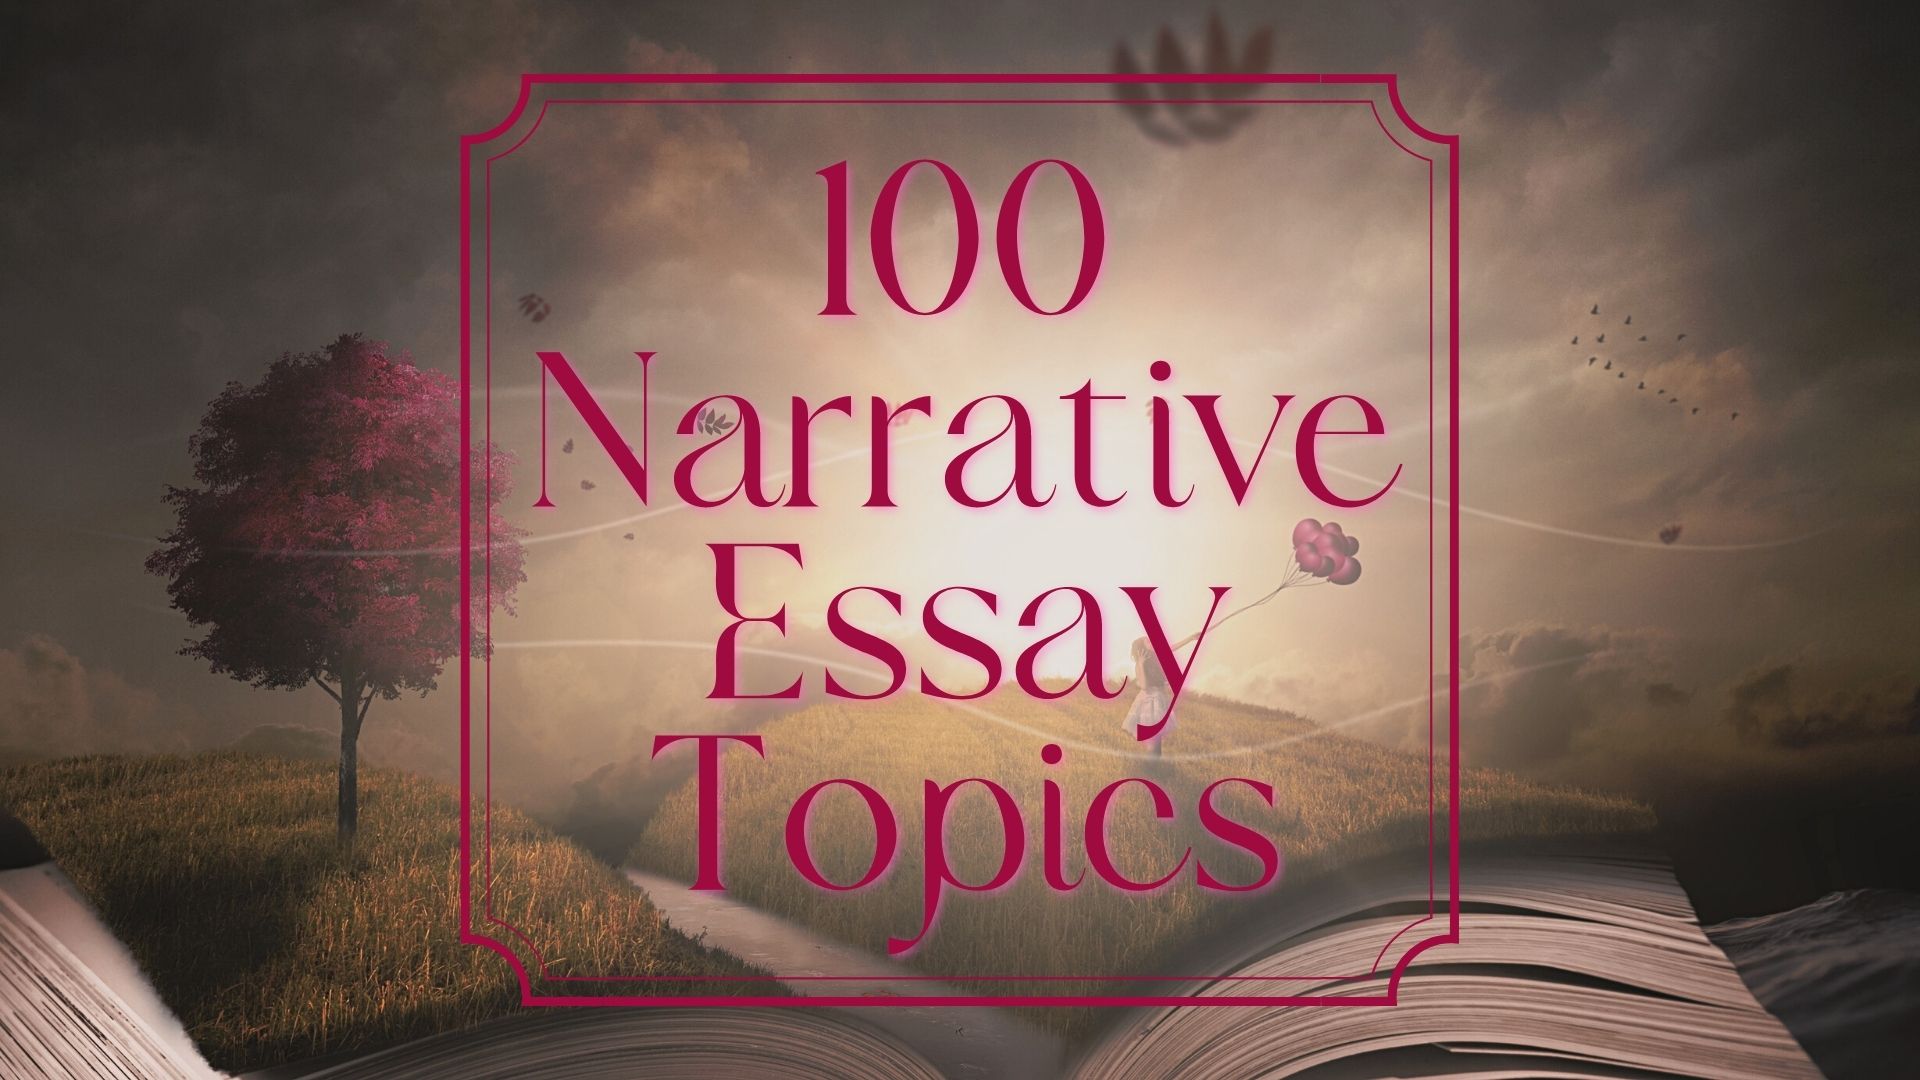 narrative essay topics